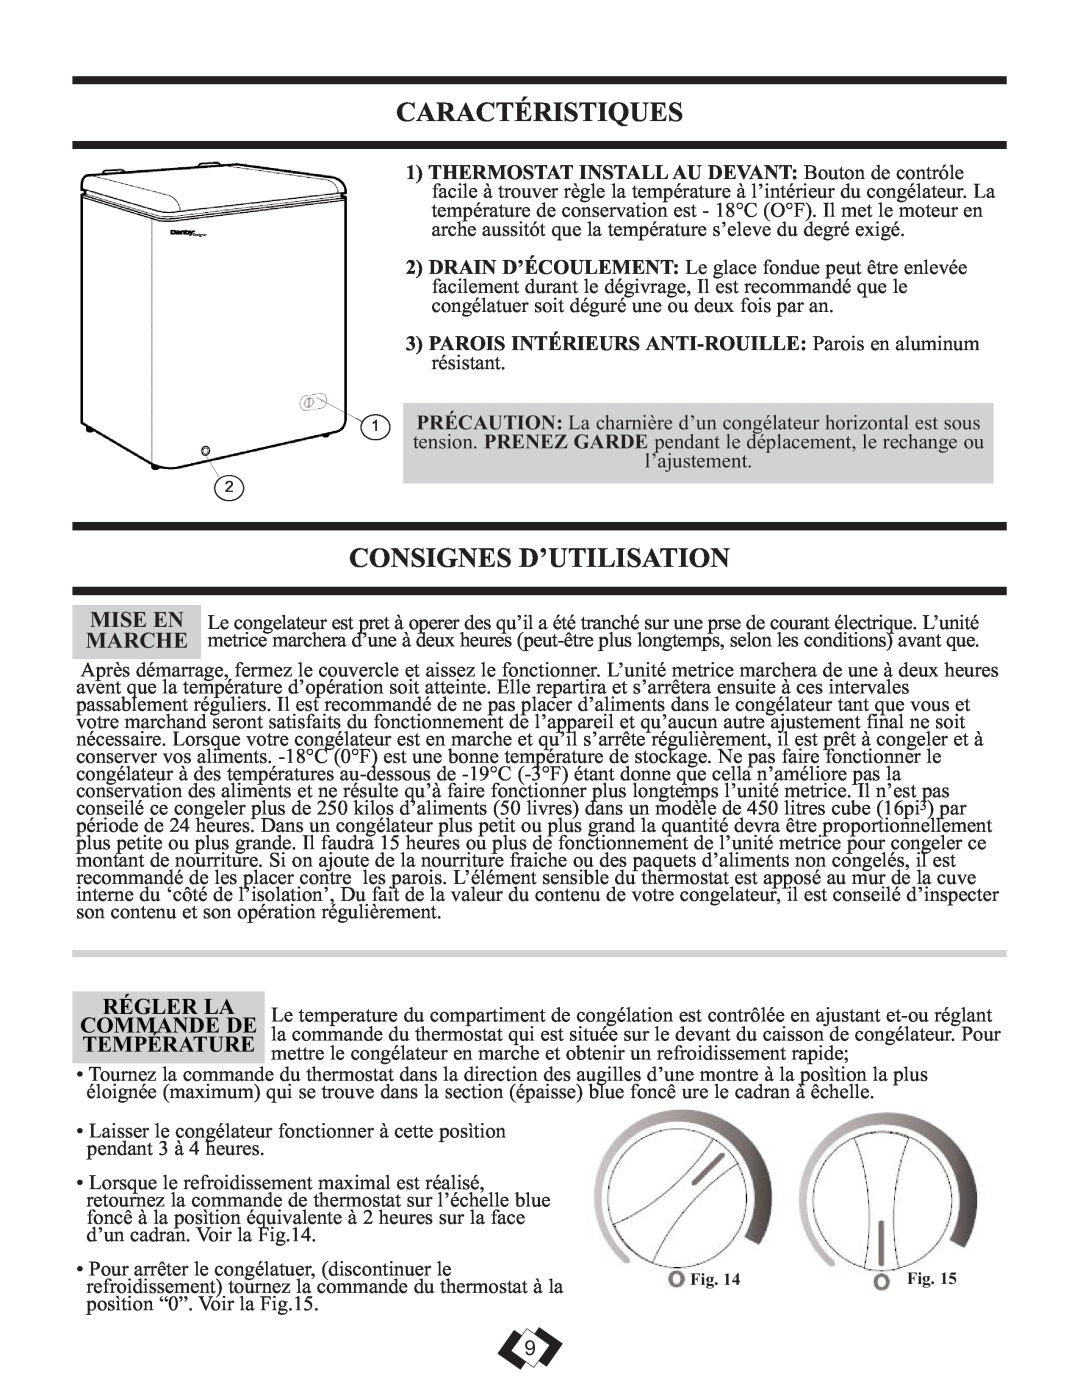 Danby DCFM289WDD manual Caractéristiques, Consignes D’Utilisation, Régler La, Commande De, Température 